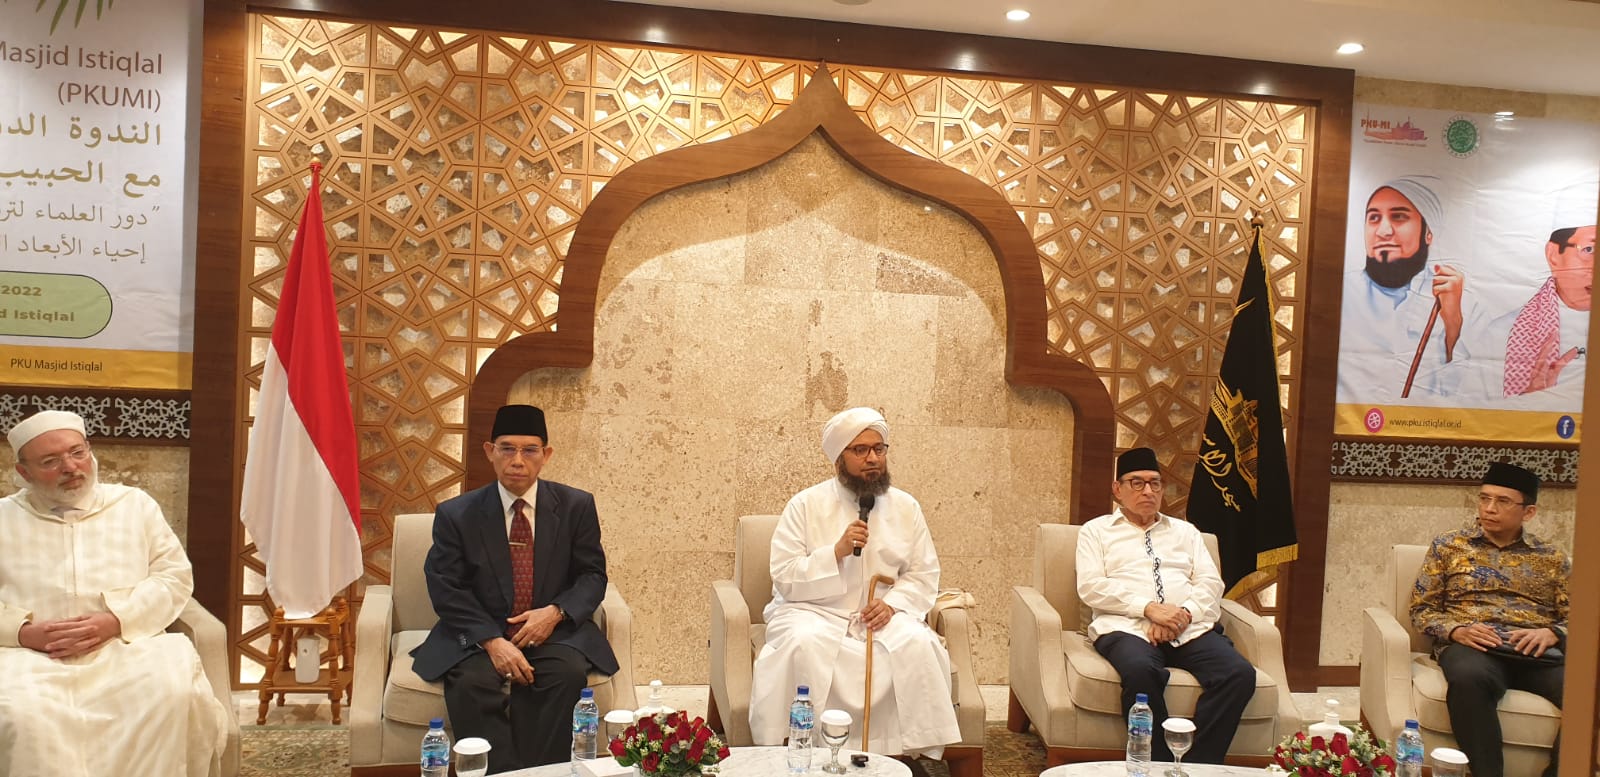 Pesan Khusus Habib Ali Al-Jufri untuk TNI: Setia Negara dan Agama Tidak Bertentangan